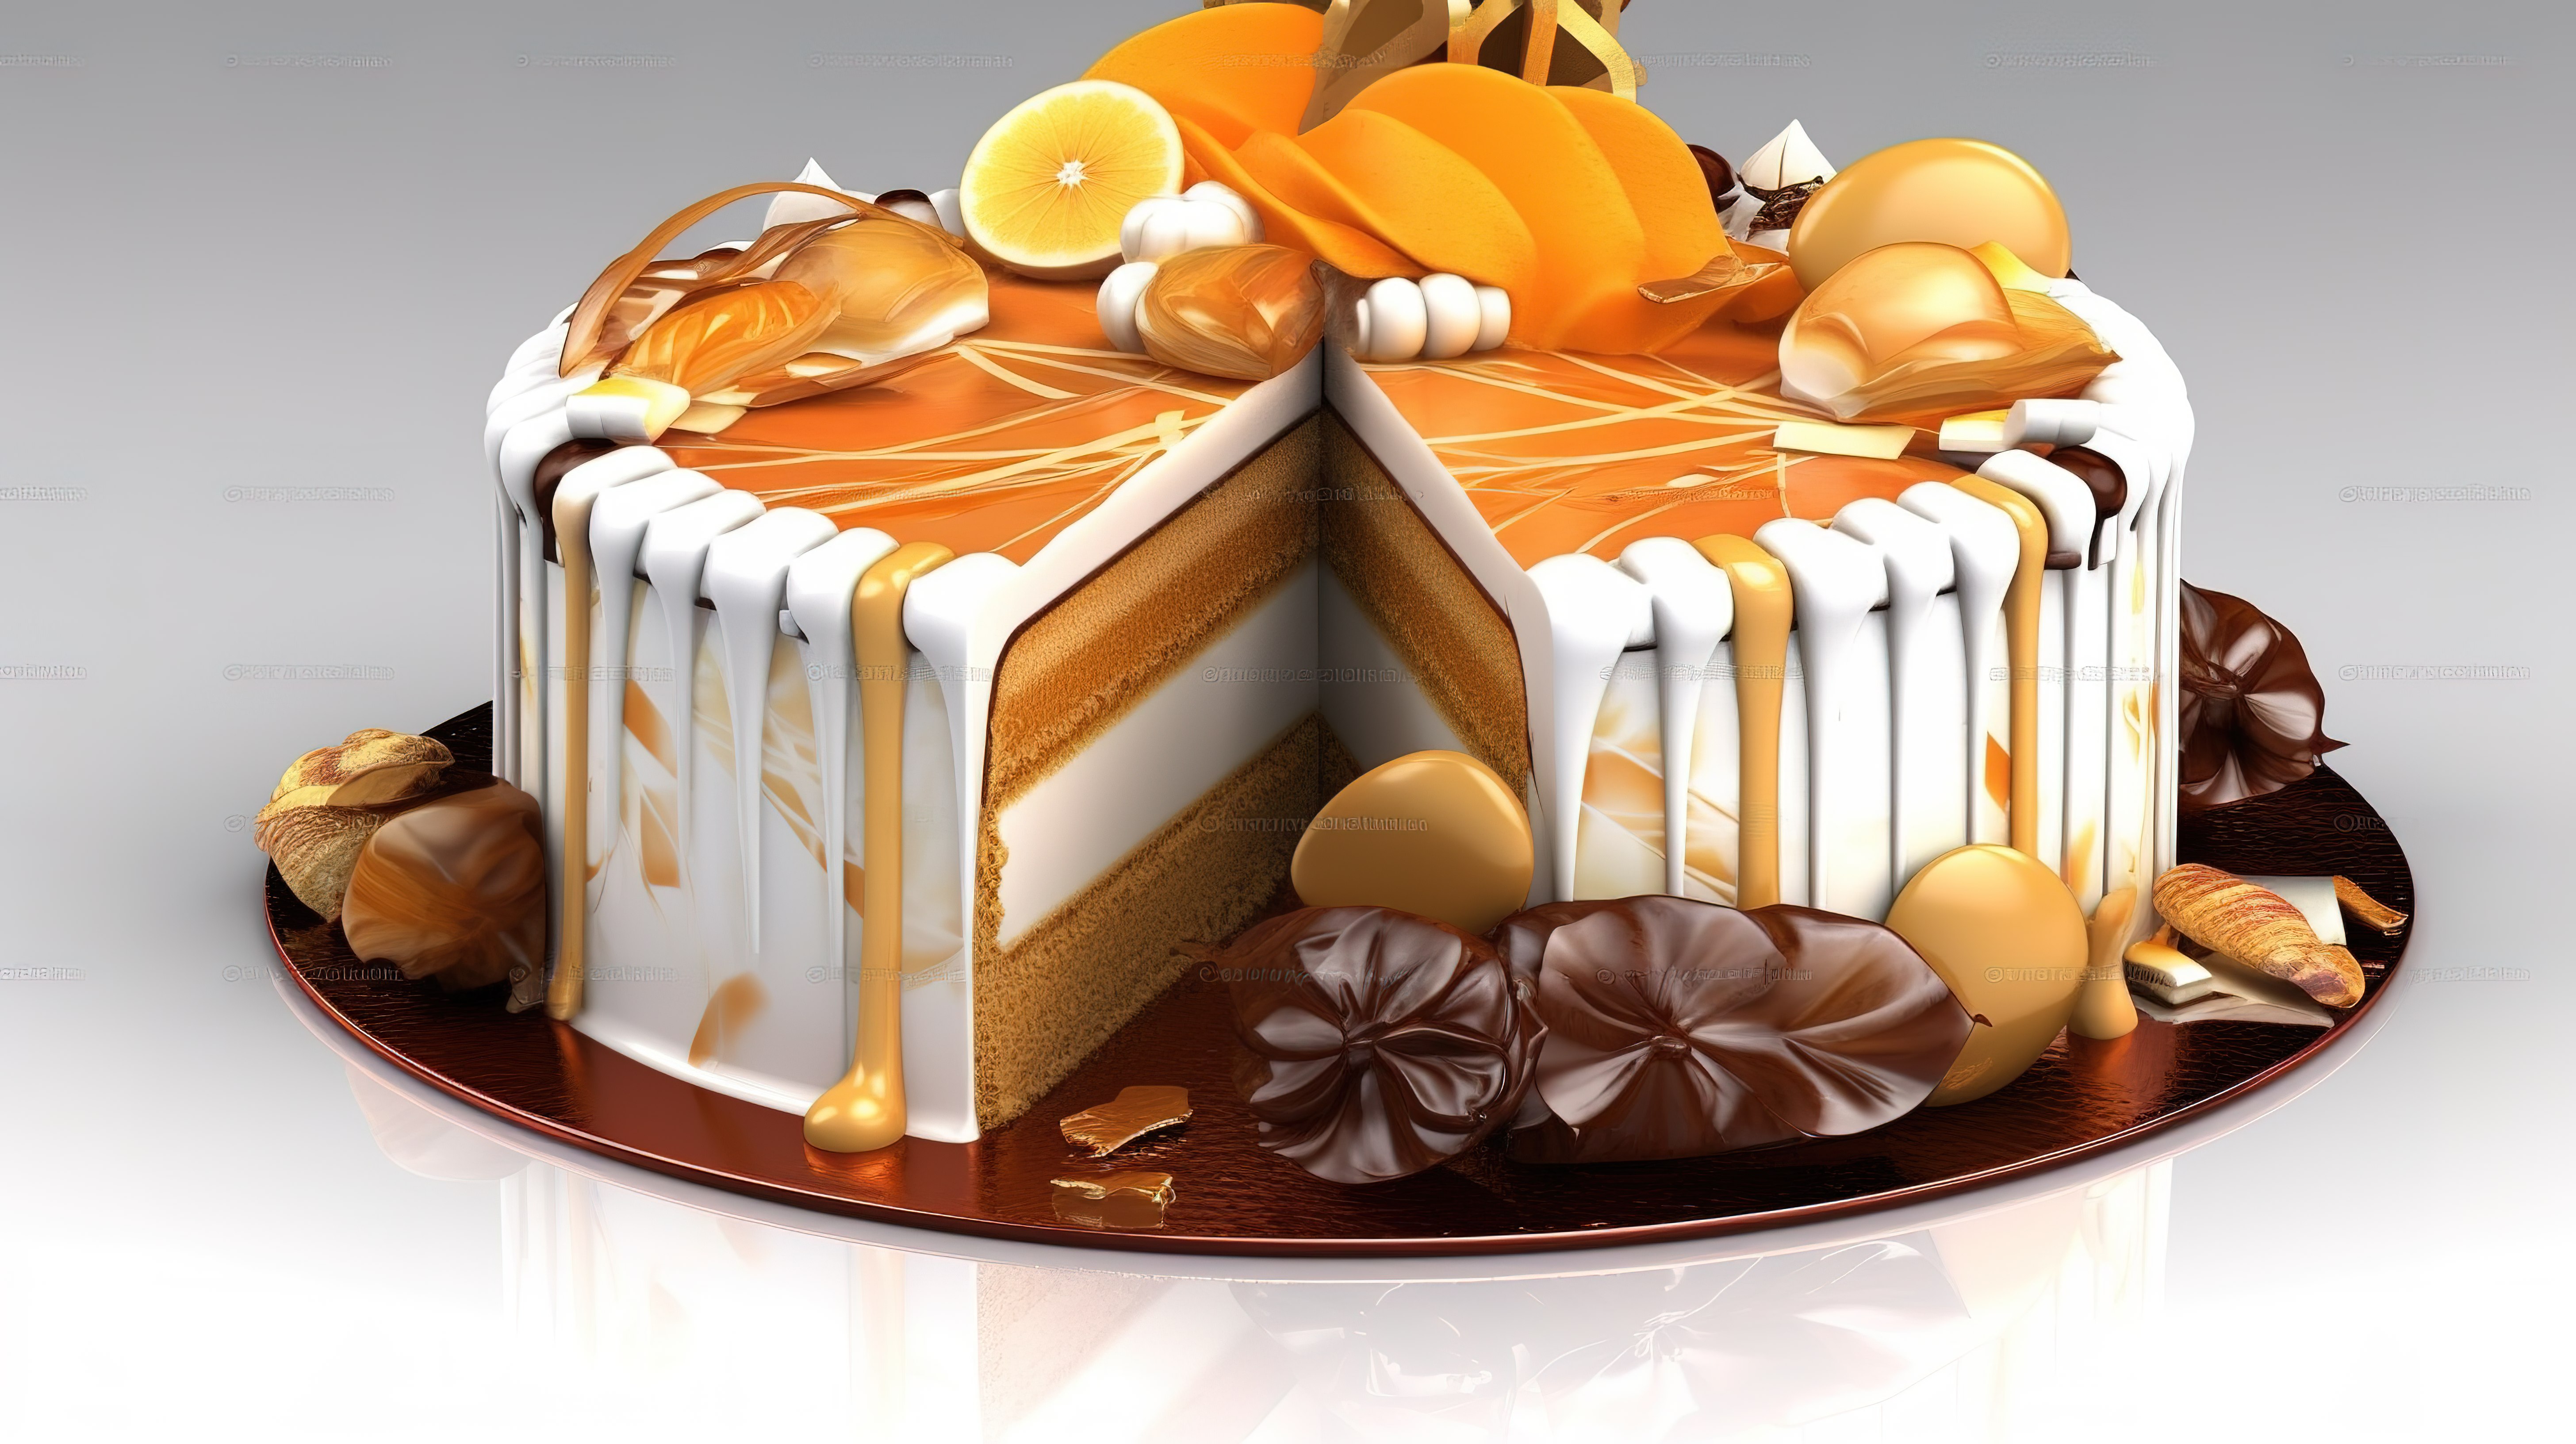 令人惊叹的 3D 蛋糕设计非常适合邀请卡演示和横幅图片